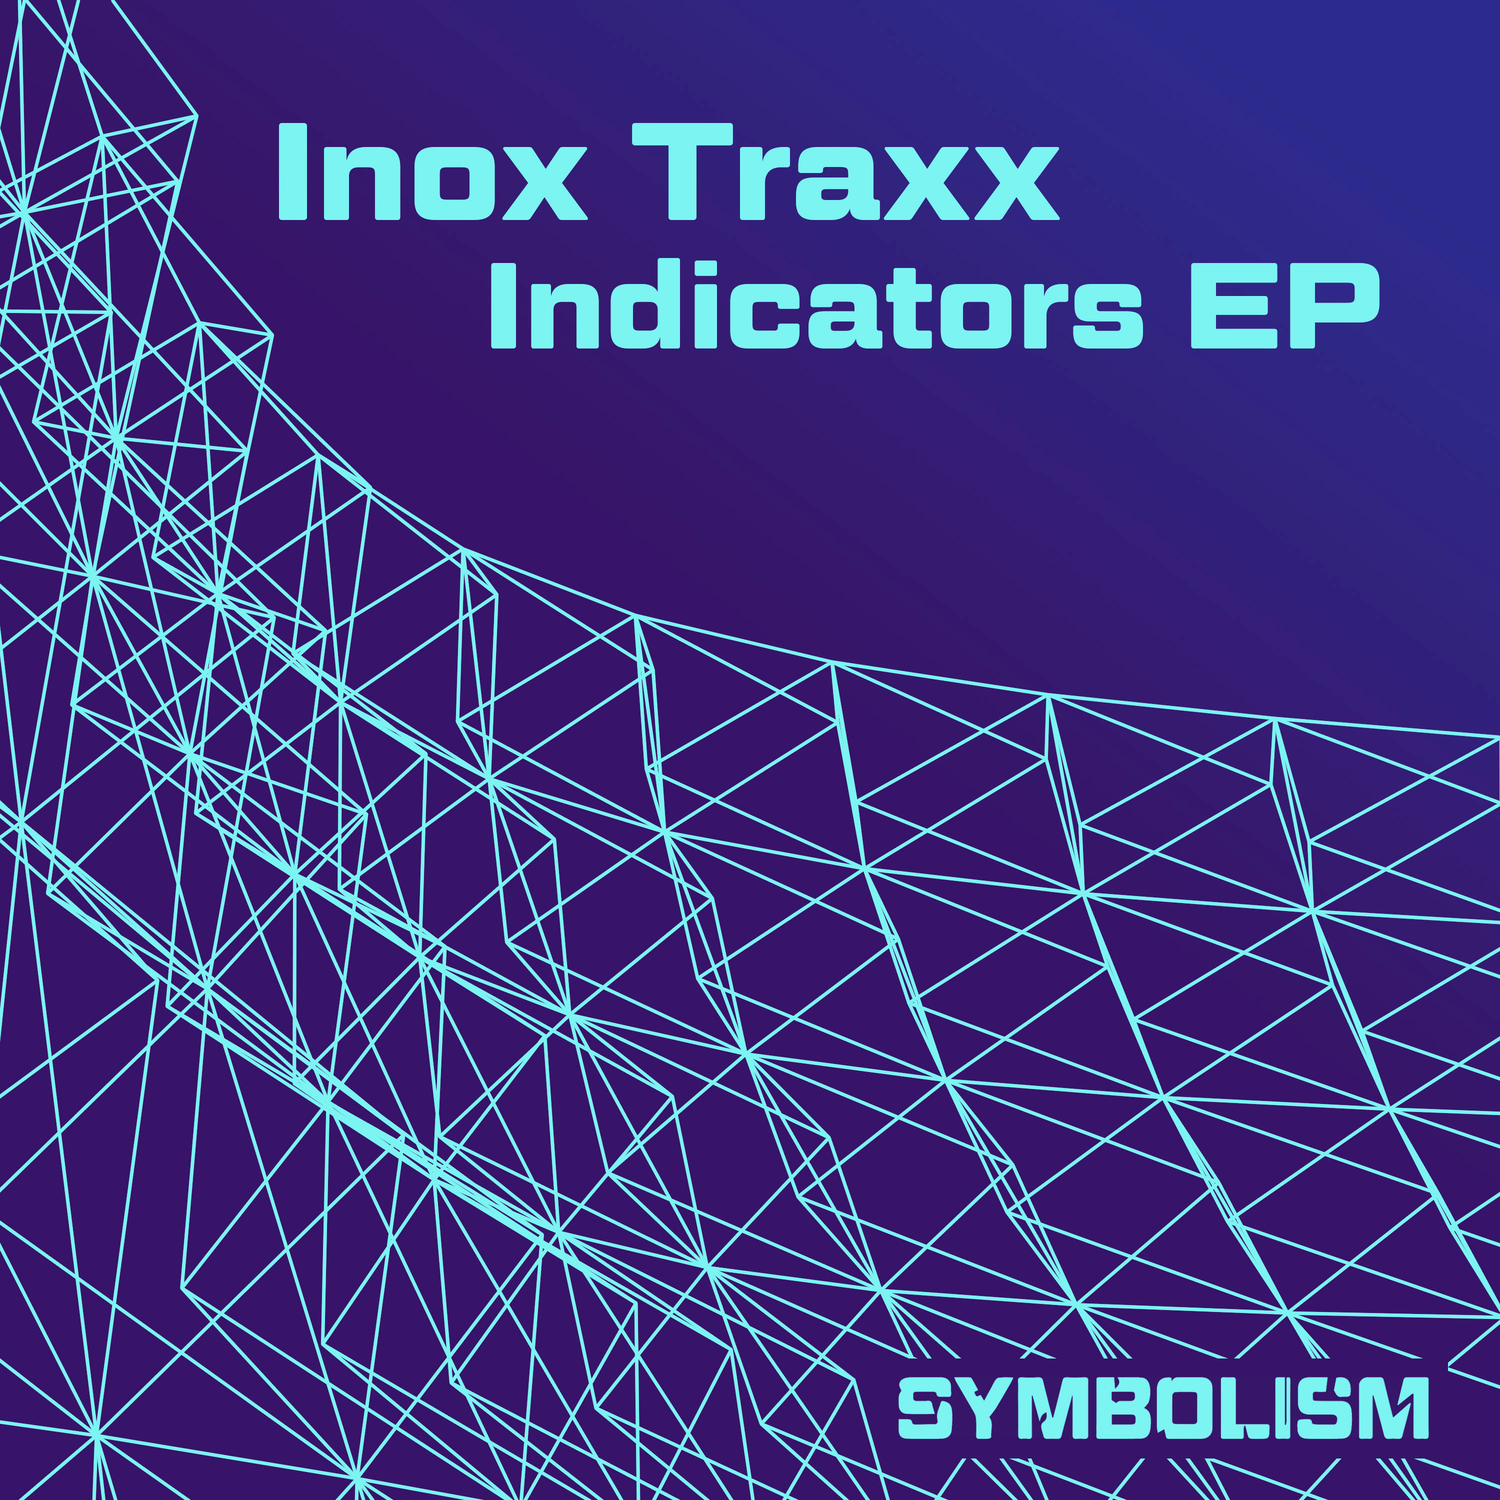 Inox Traxx